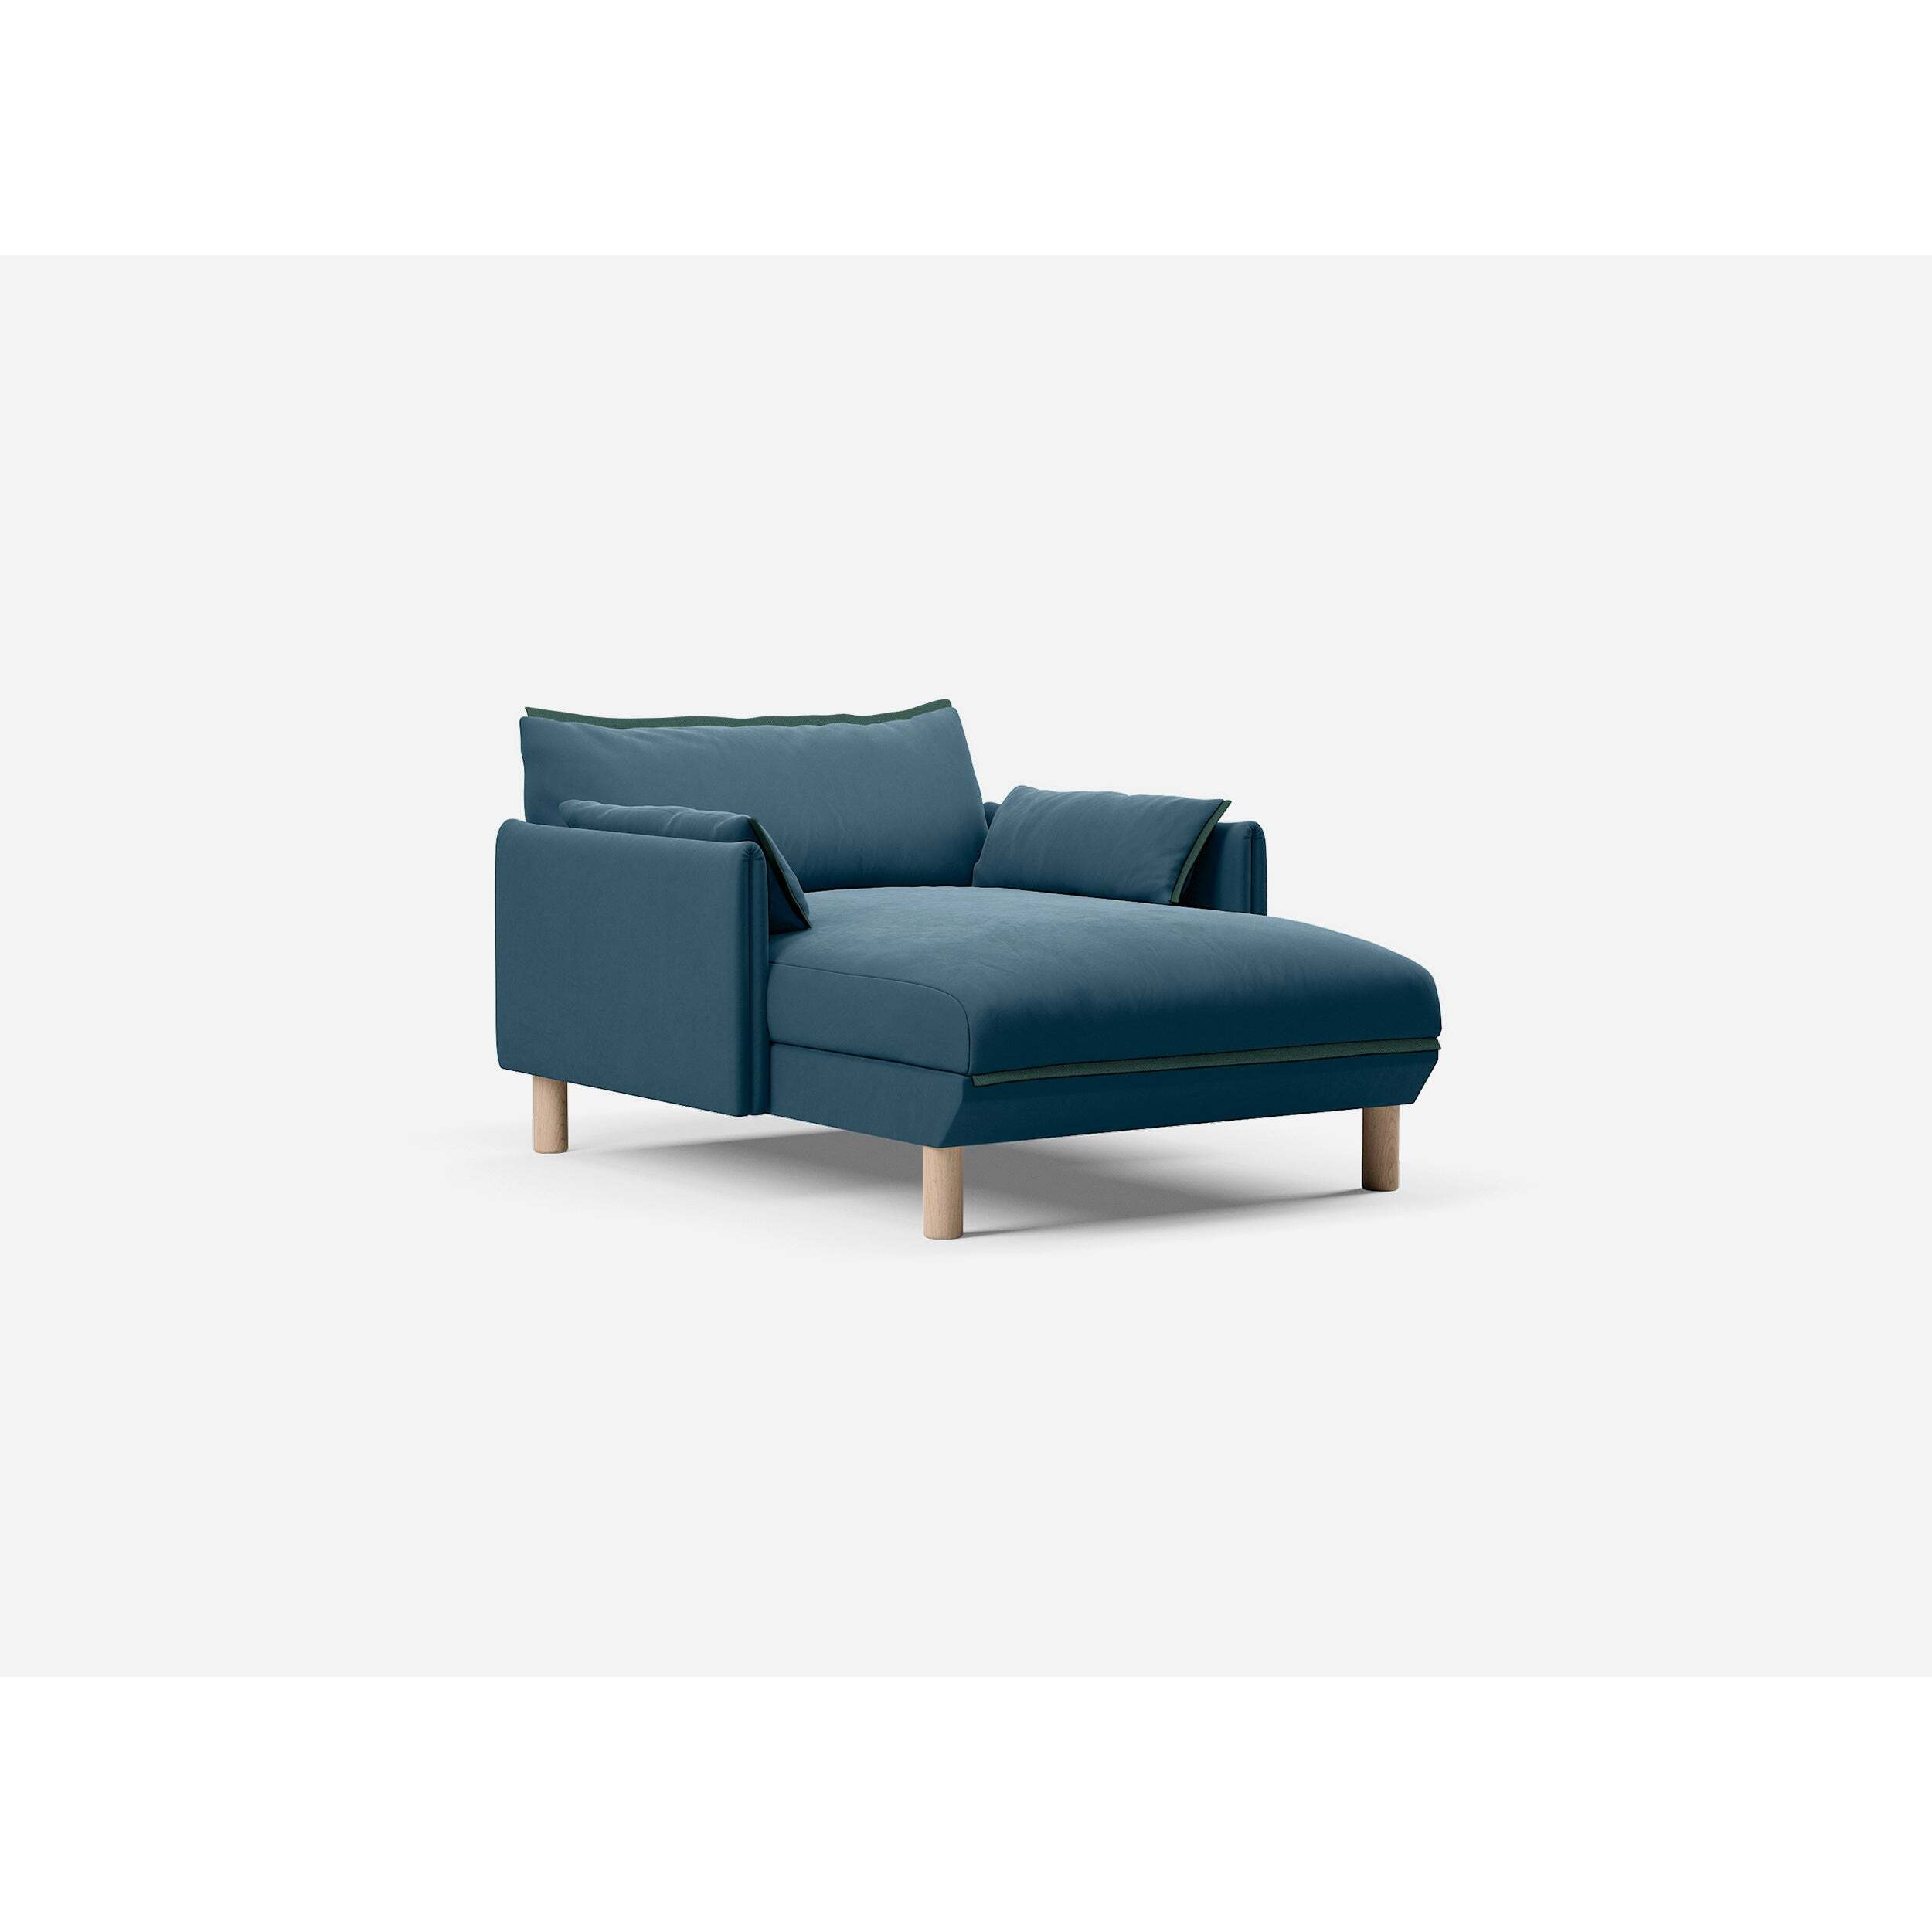 1.5 Seater Chaise Sofa - Teal Velvet - image 1